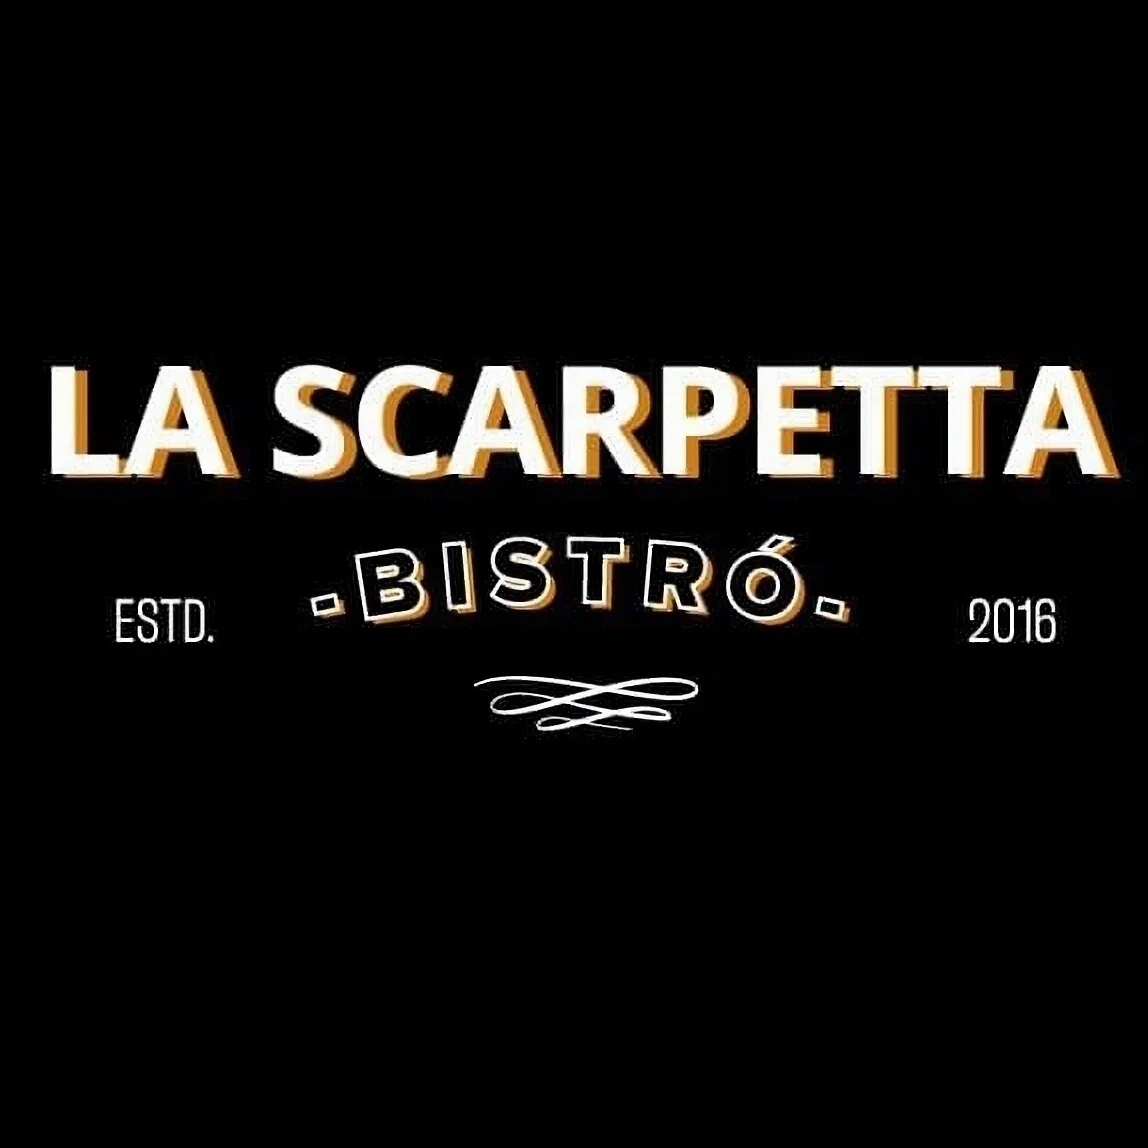 Restaurante-la-scarpetta-22529